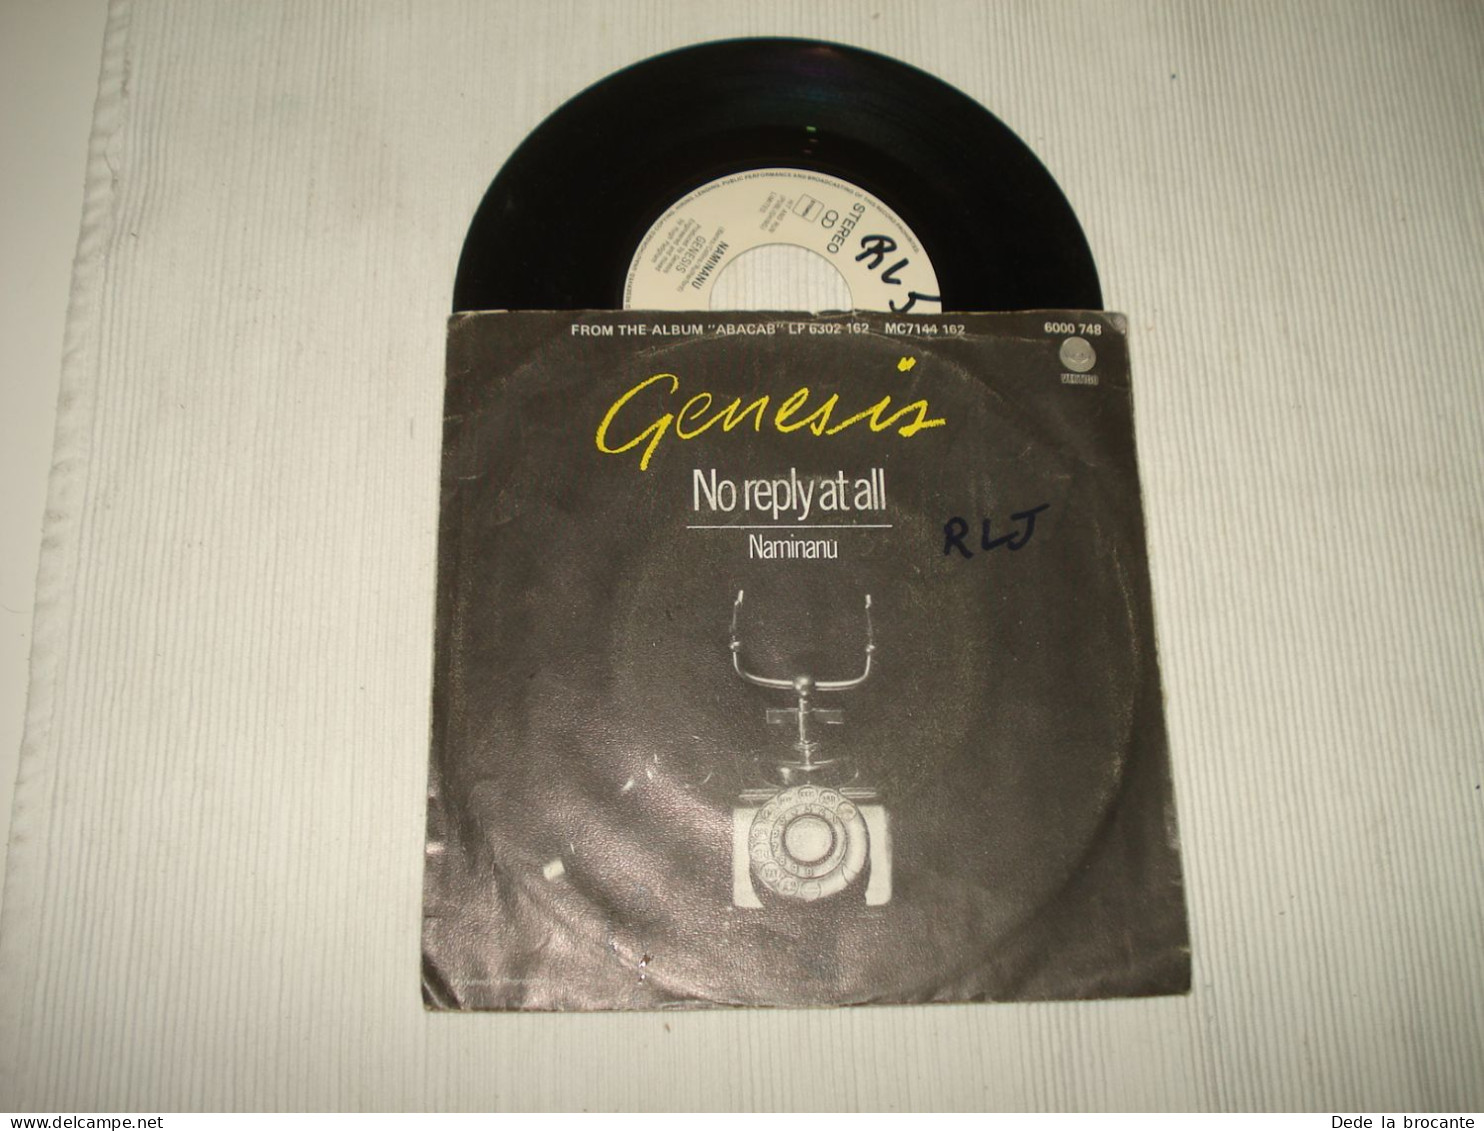 B14 /  Genesis – No Reply At All - SP - Vertigo – 6000 748 - Neth  1981  EX/VG+ - Rock